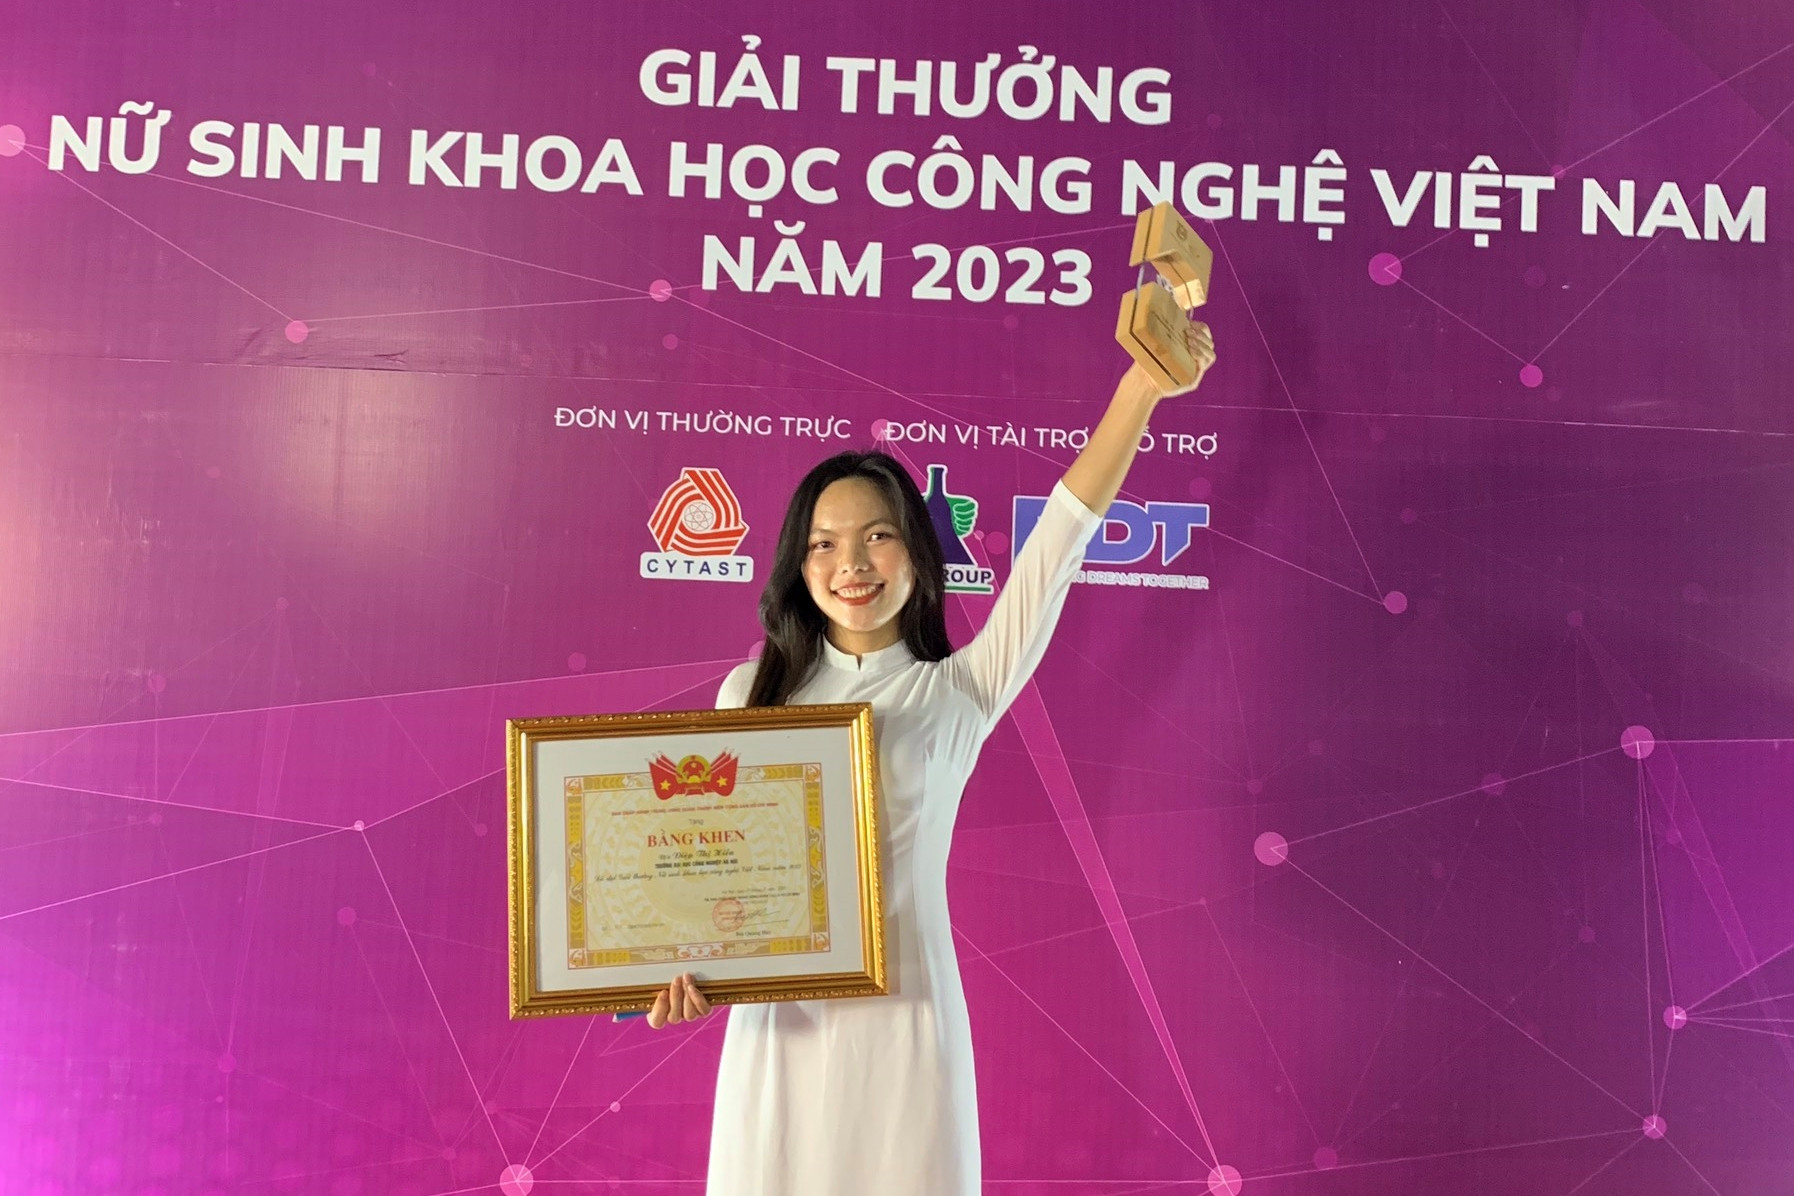 Diệp Thị Hiền - Sinh viên khoa Điện tử xuất sắc đạt giải Nữ sinh tiêu biểu lĩnh vực Koa học công nghệ năm 2023